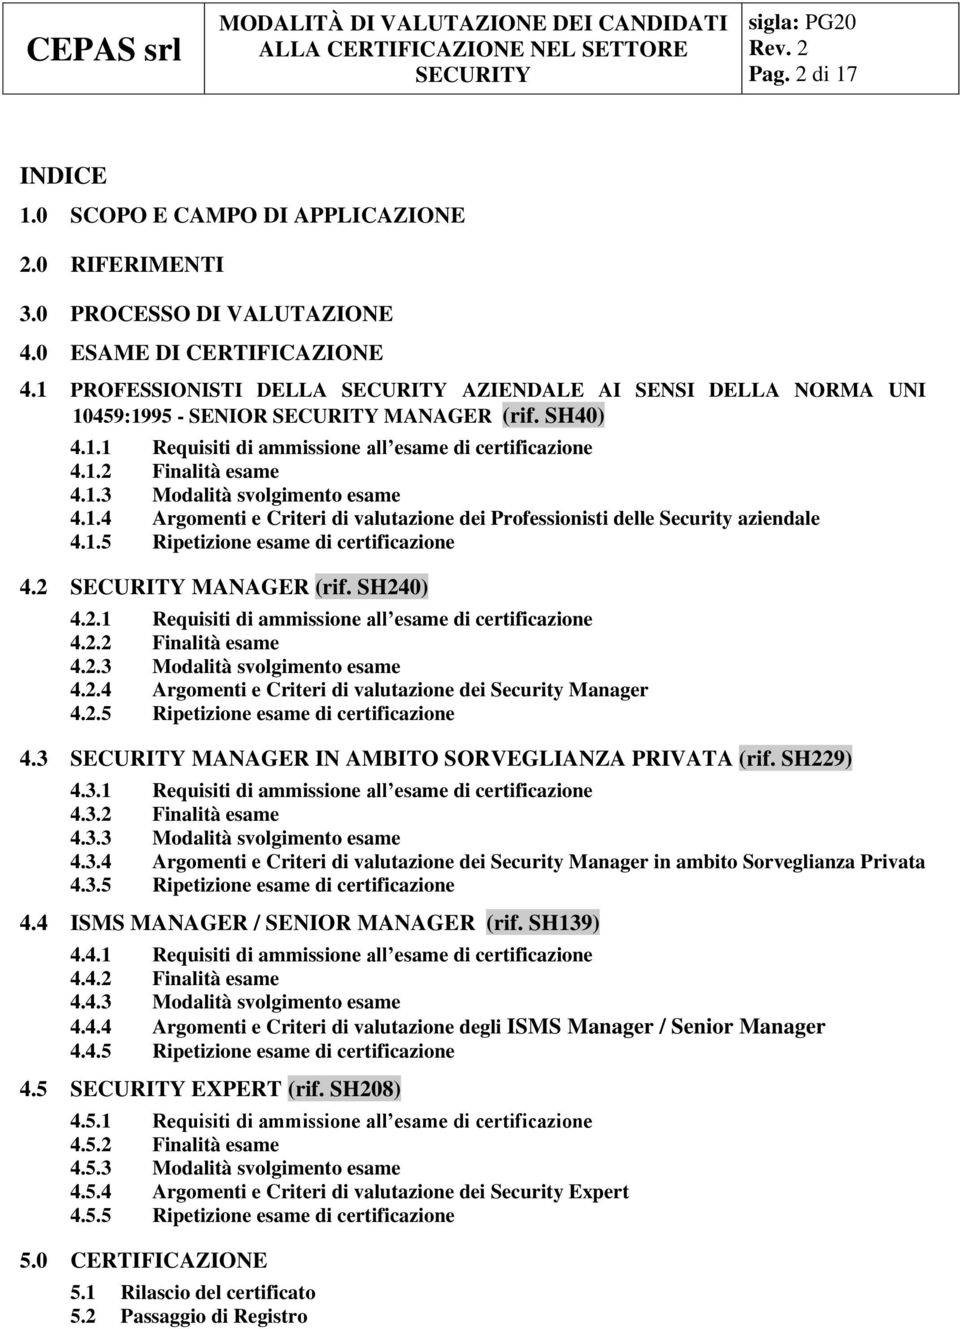 1.4 Argomenti e Criteri di valutazione dei Professionisti delle Security aziendale 4.1.5 Ripetizione esame di certificazione 4.2 MANAGER (rif. SH240) 4.2.1 Requisiti di ammissione all esame di certificazione 4.